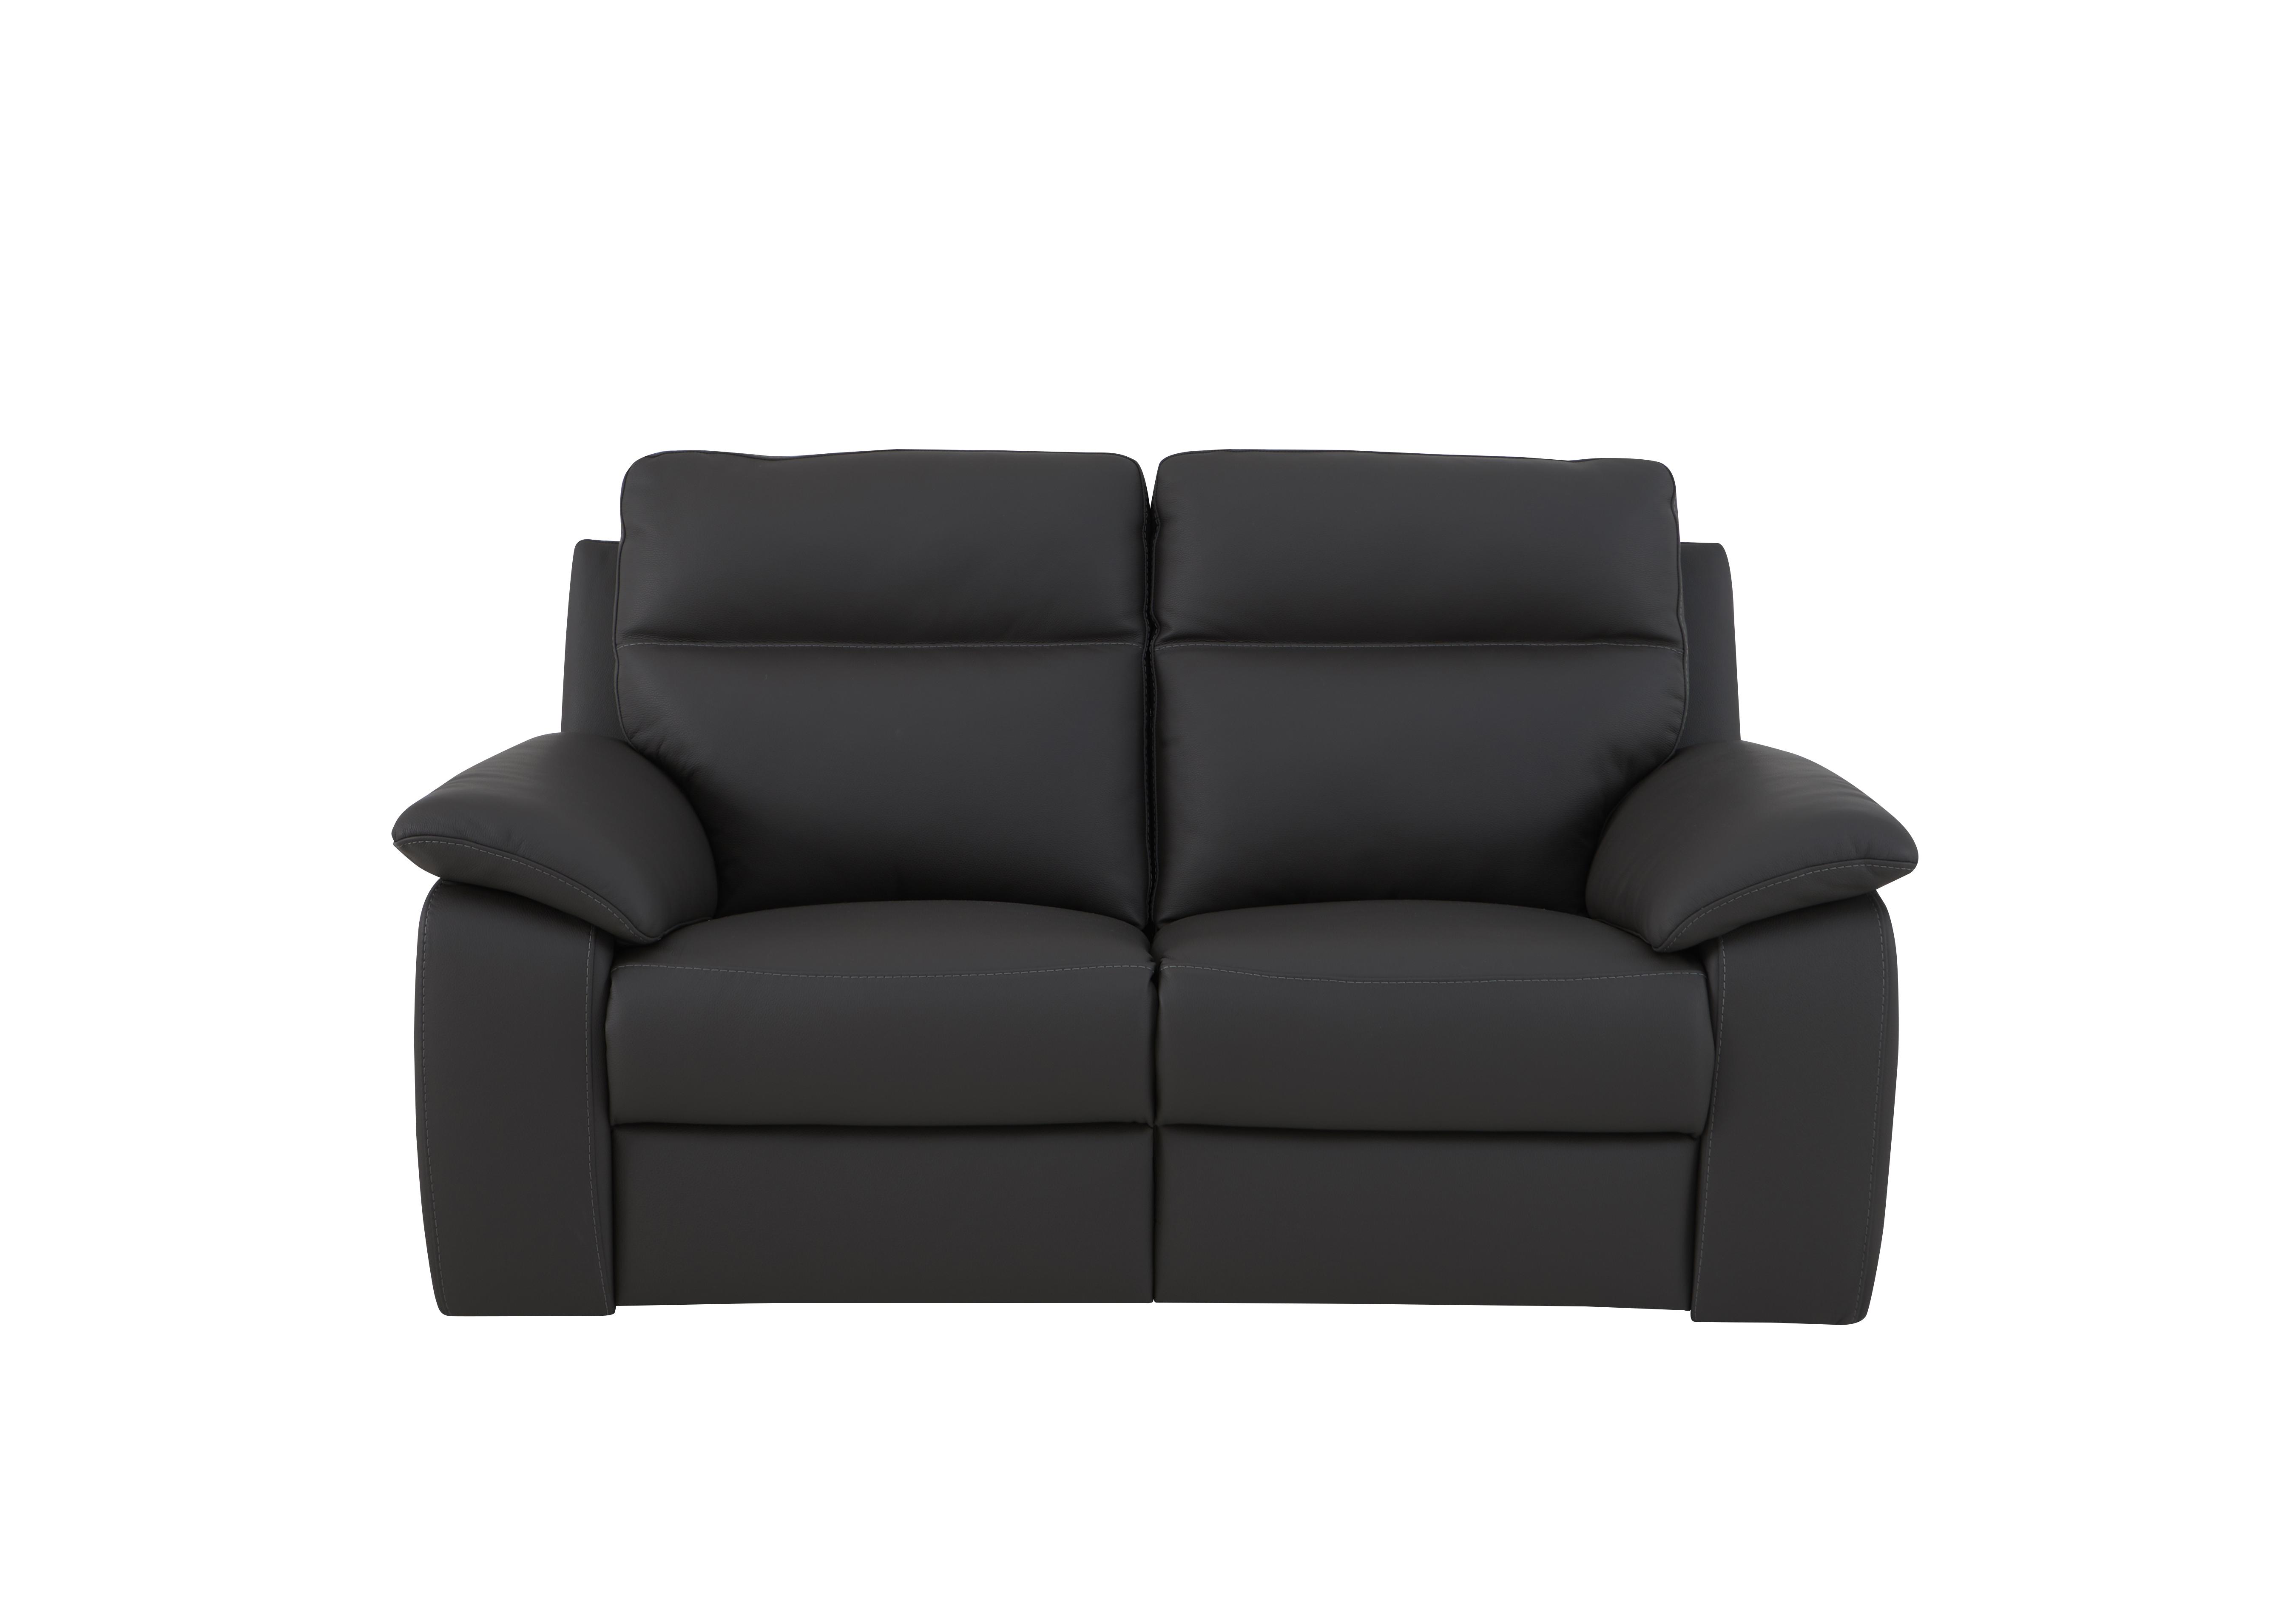 Pepino 2 Seater Leather Sofa in 327 Torello Grigio Scuro on Furniture Village